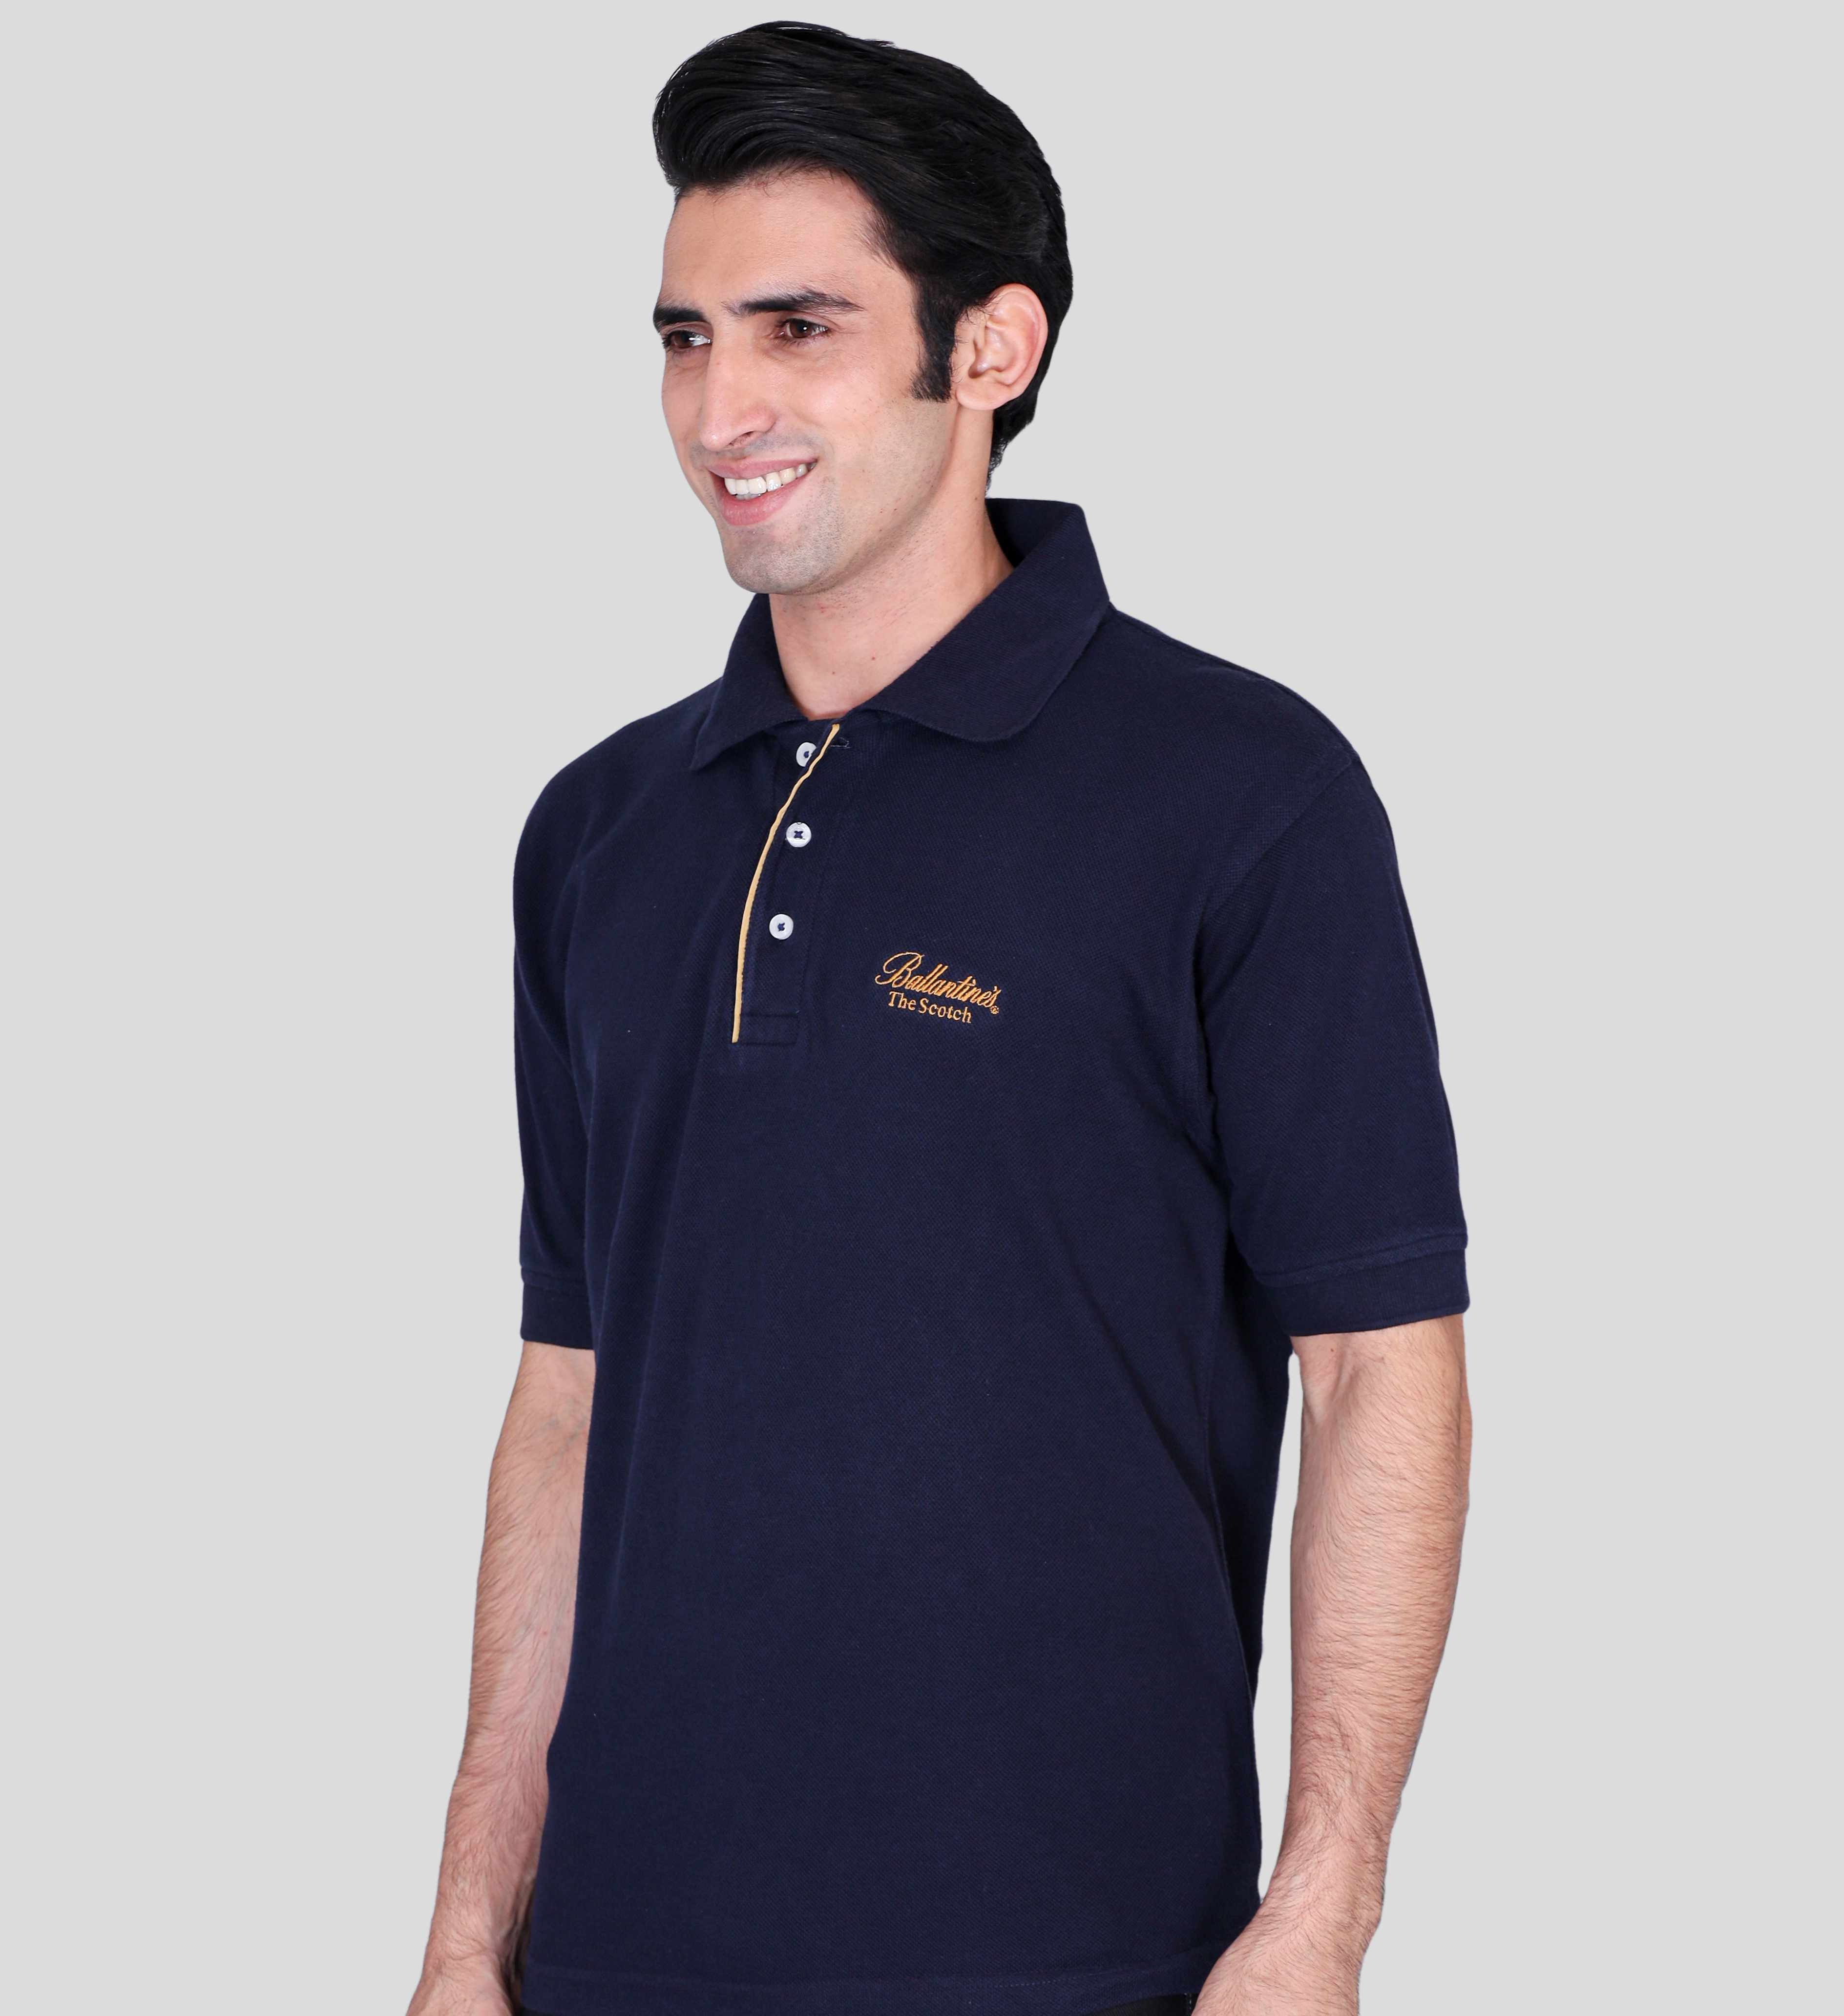 Ballantines navy blue custom polo t-shirts with company logo